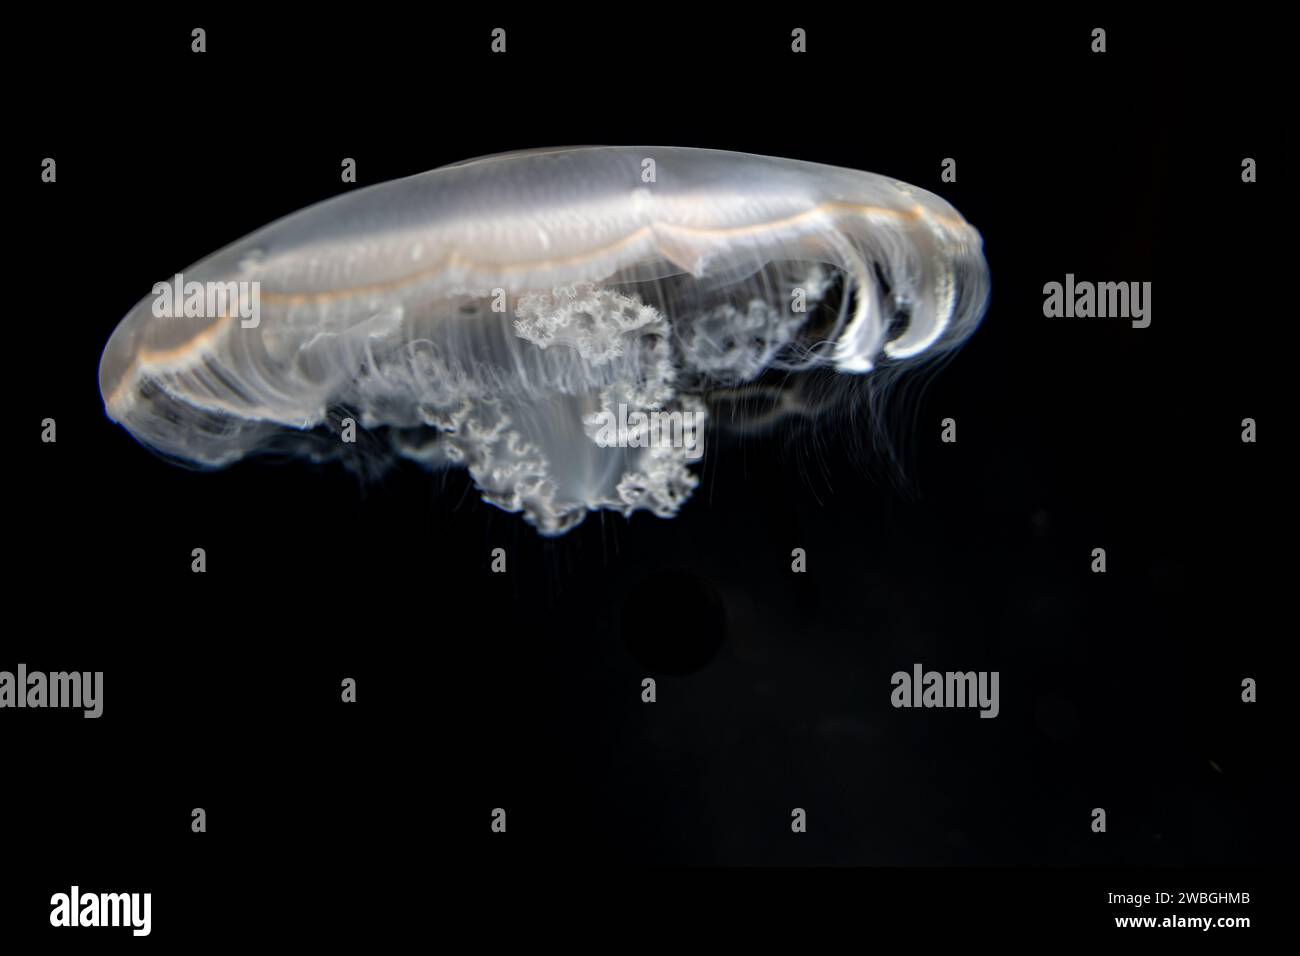 Gespenstisch klarer Körper und fadenartige Tentakel von Quallen, die vor dunklem Hintergrund schwimmen Stockfoto